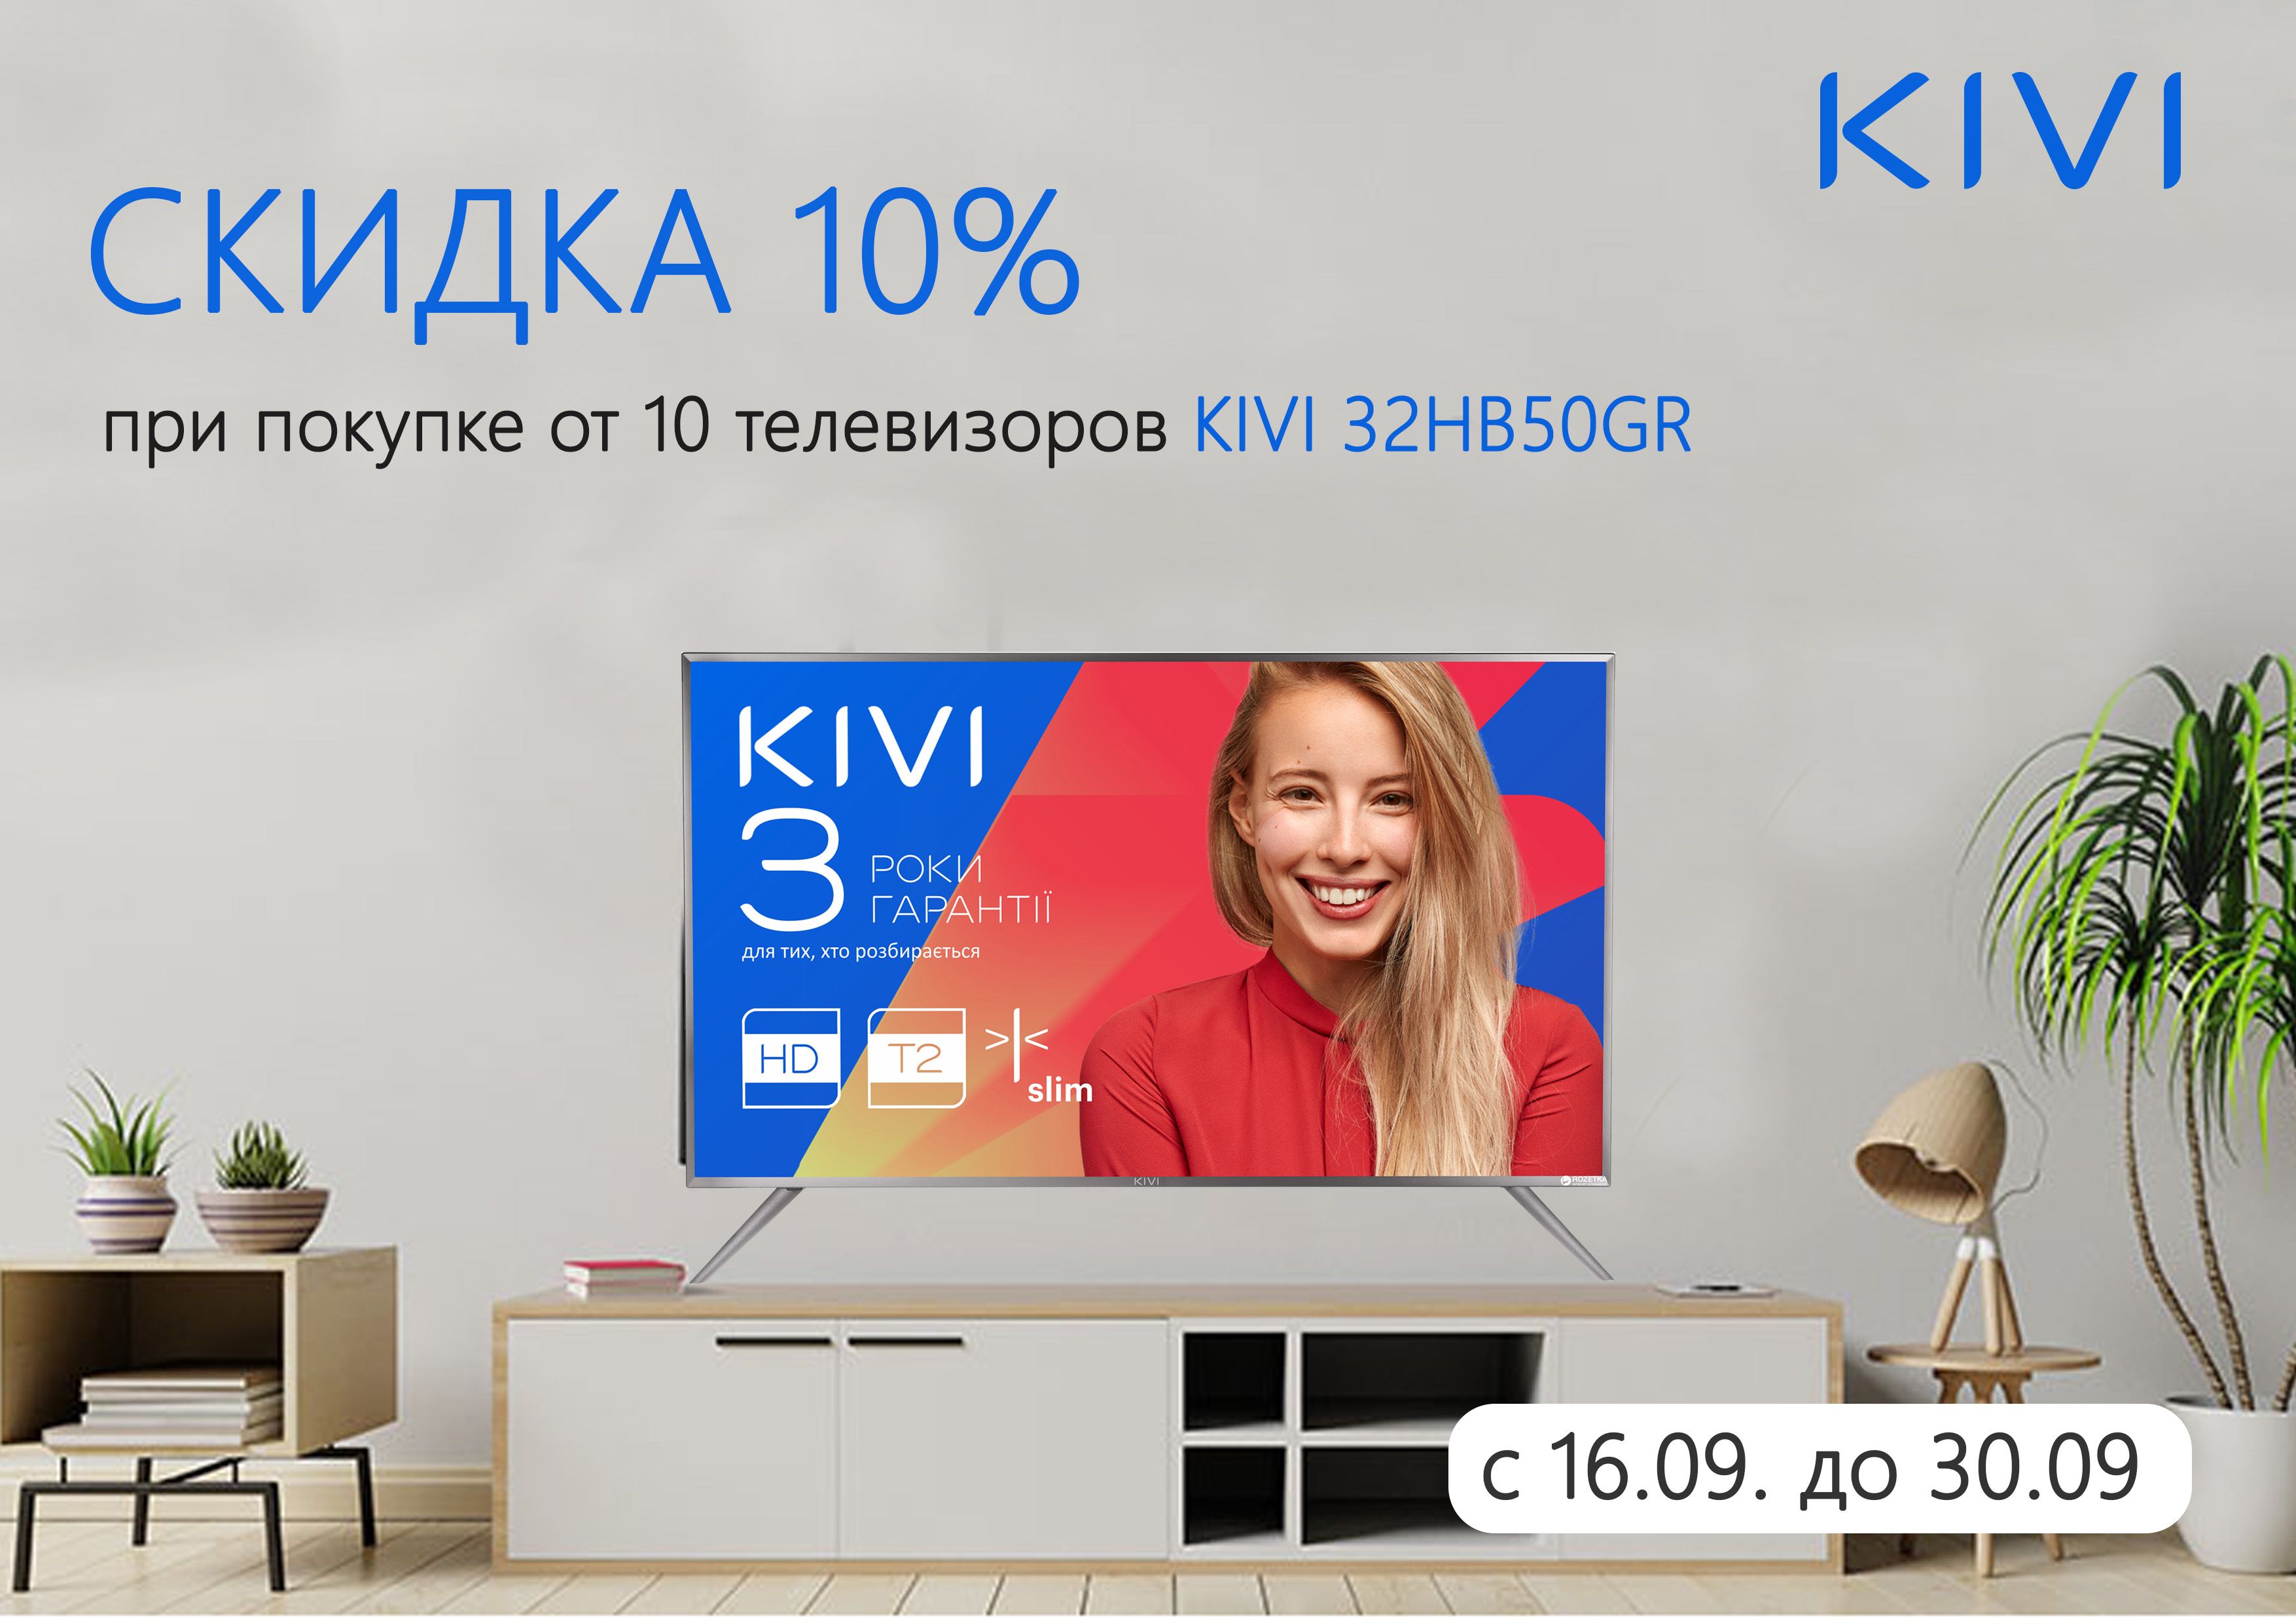 Скидка 10% при покупке от 10 телевизоров Kivi 32HB50GR